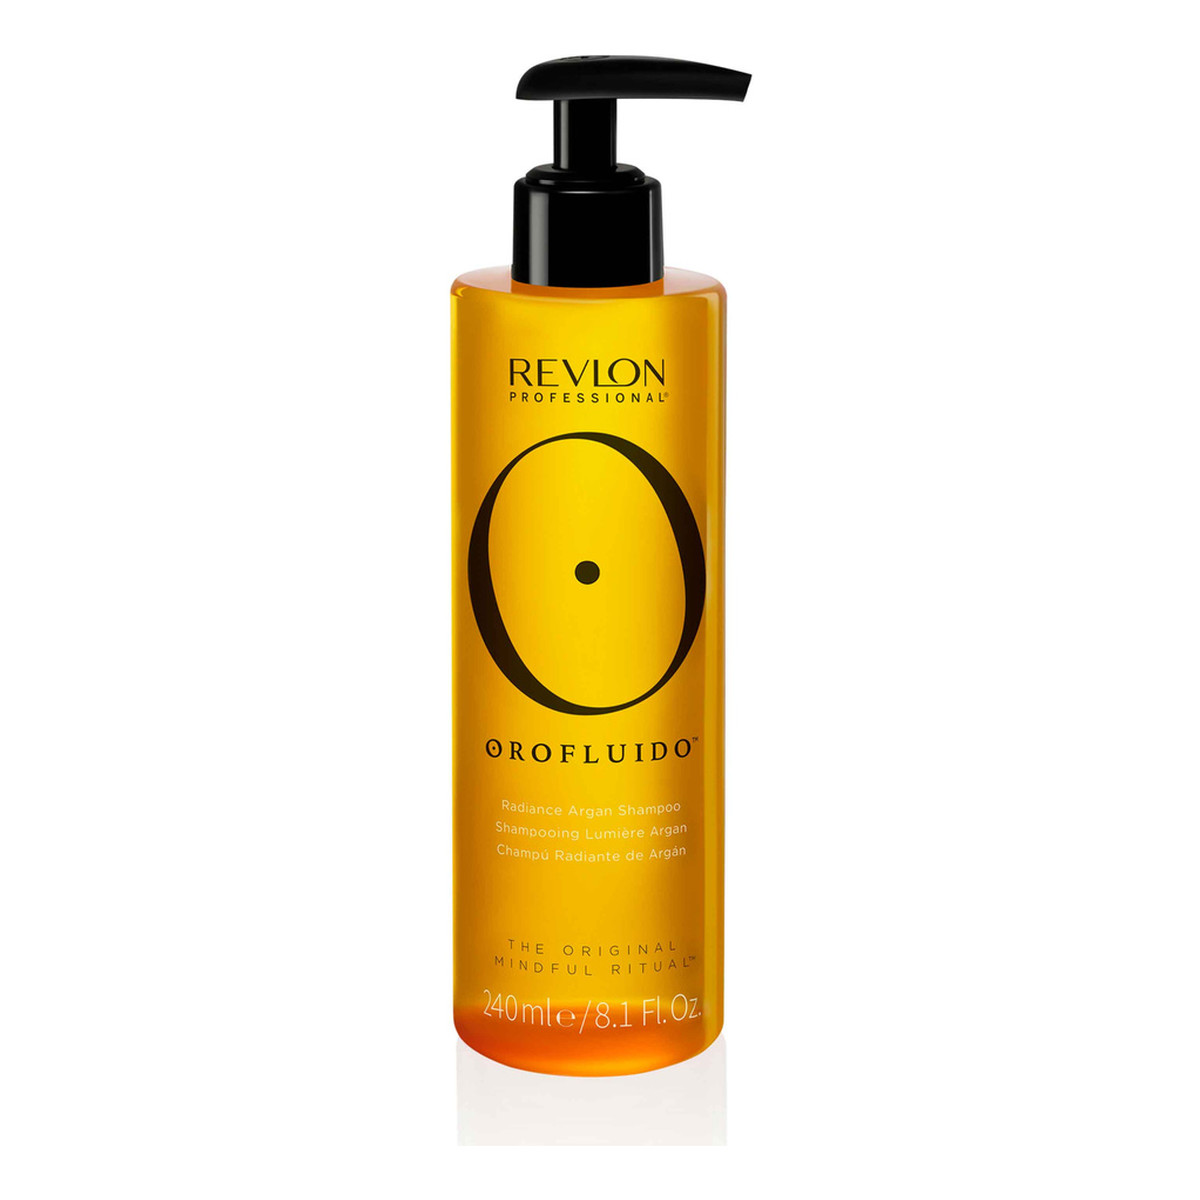 Revlon Orofluido Radiance Argan Shampoo szampon do włosów z olejkiem arganowym 240ml